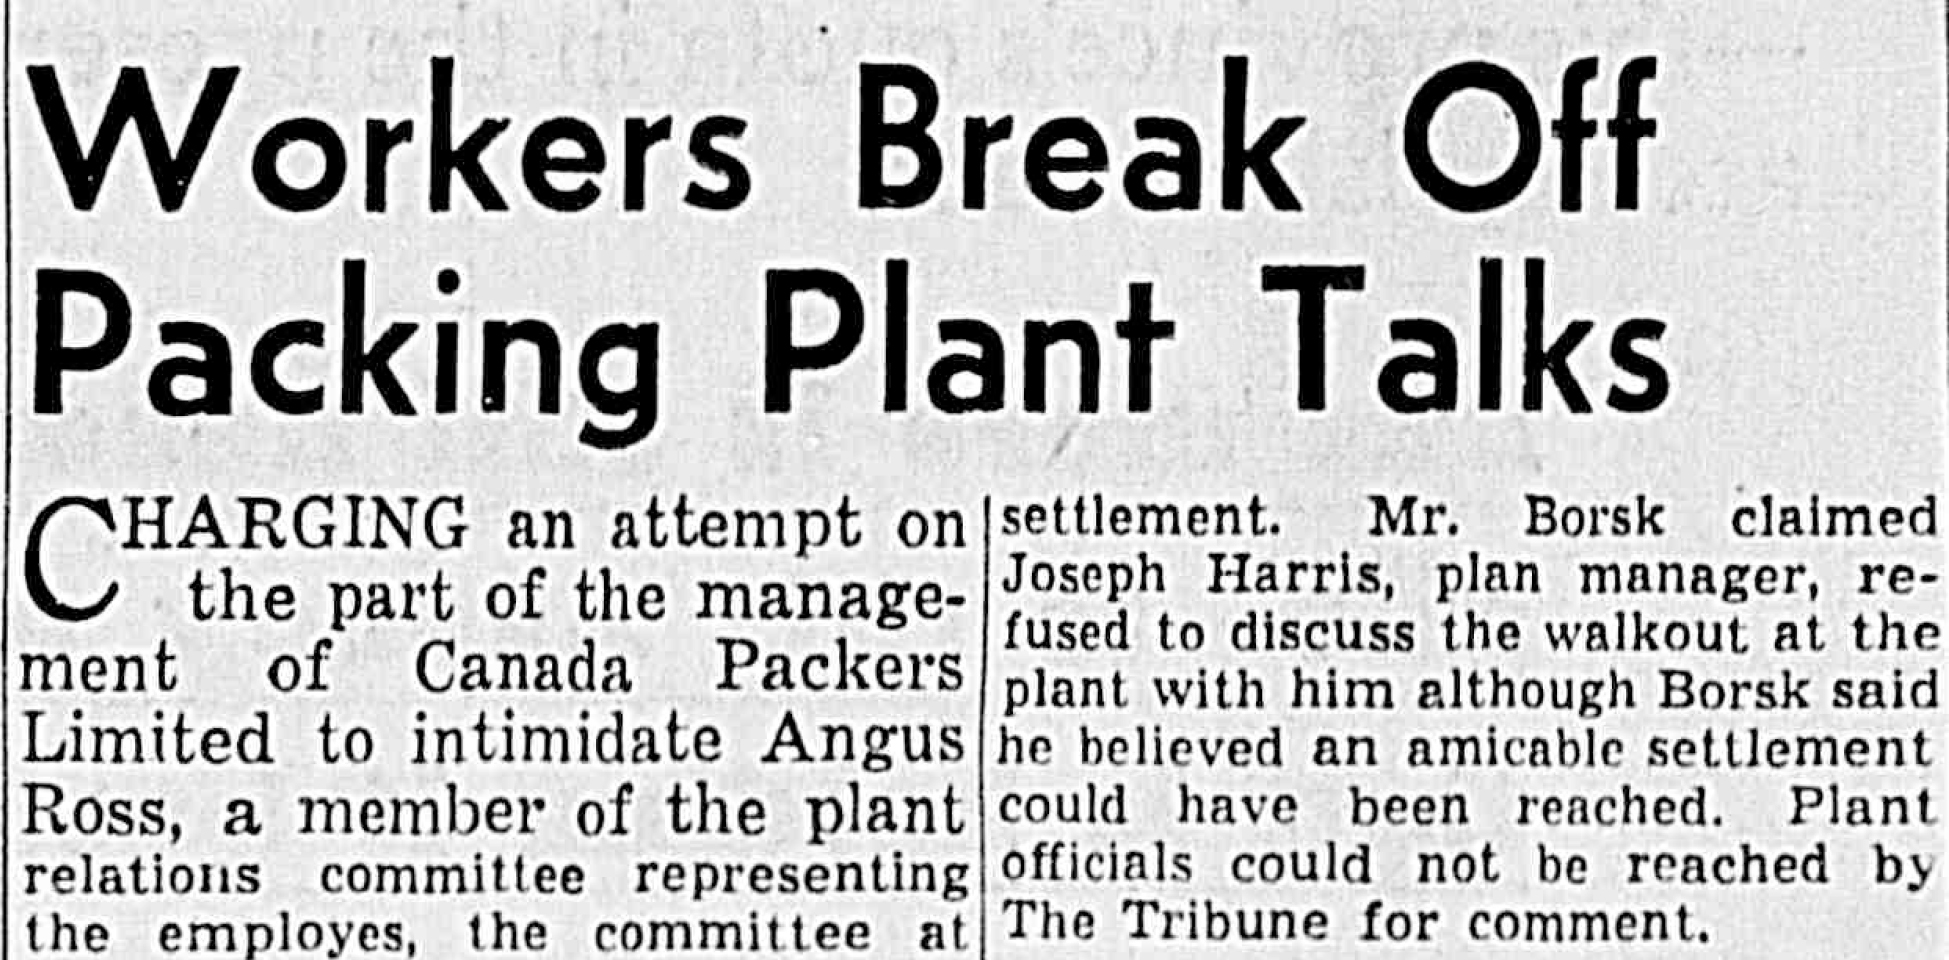 Newspaper headline: Workers Break Off Packing Plant Talks